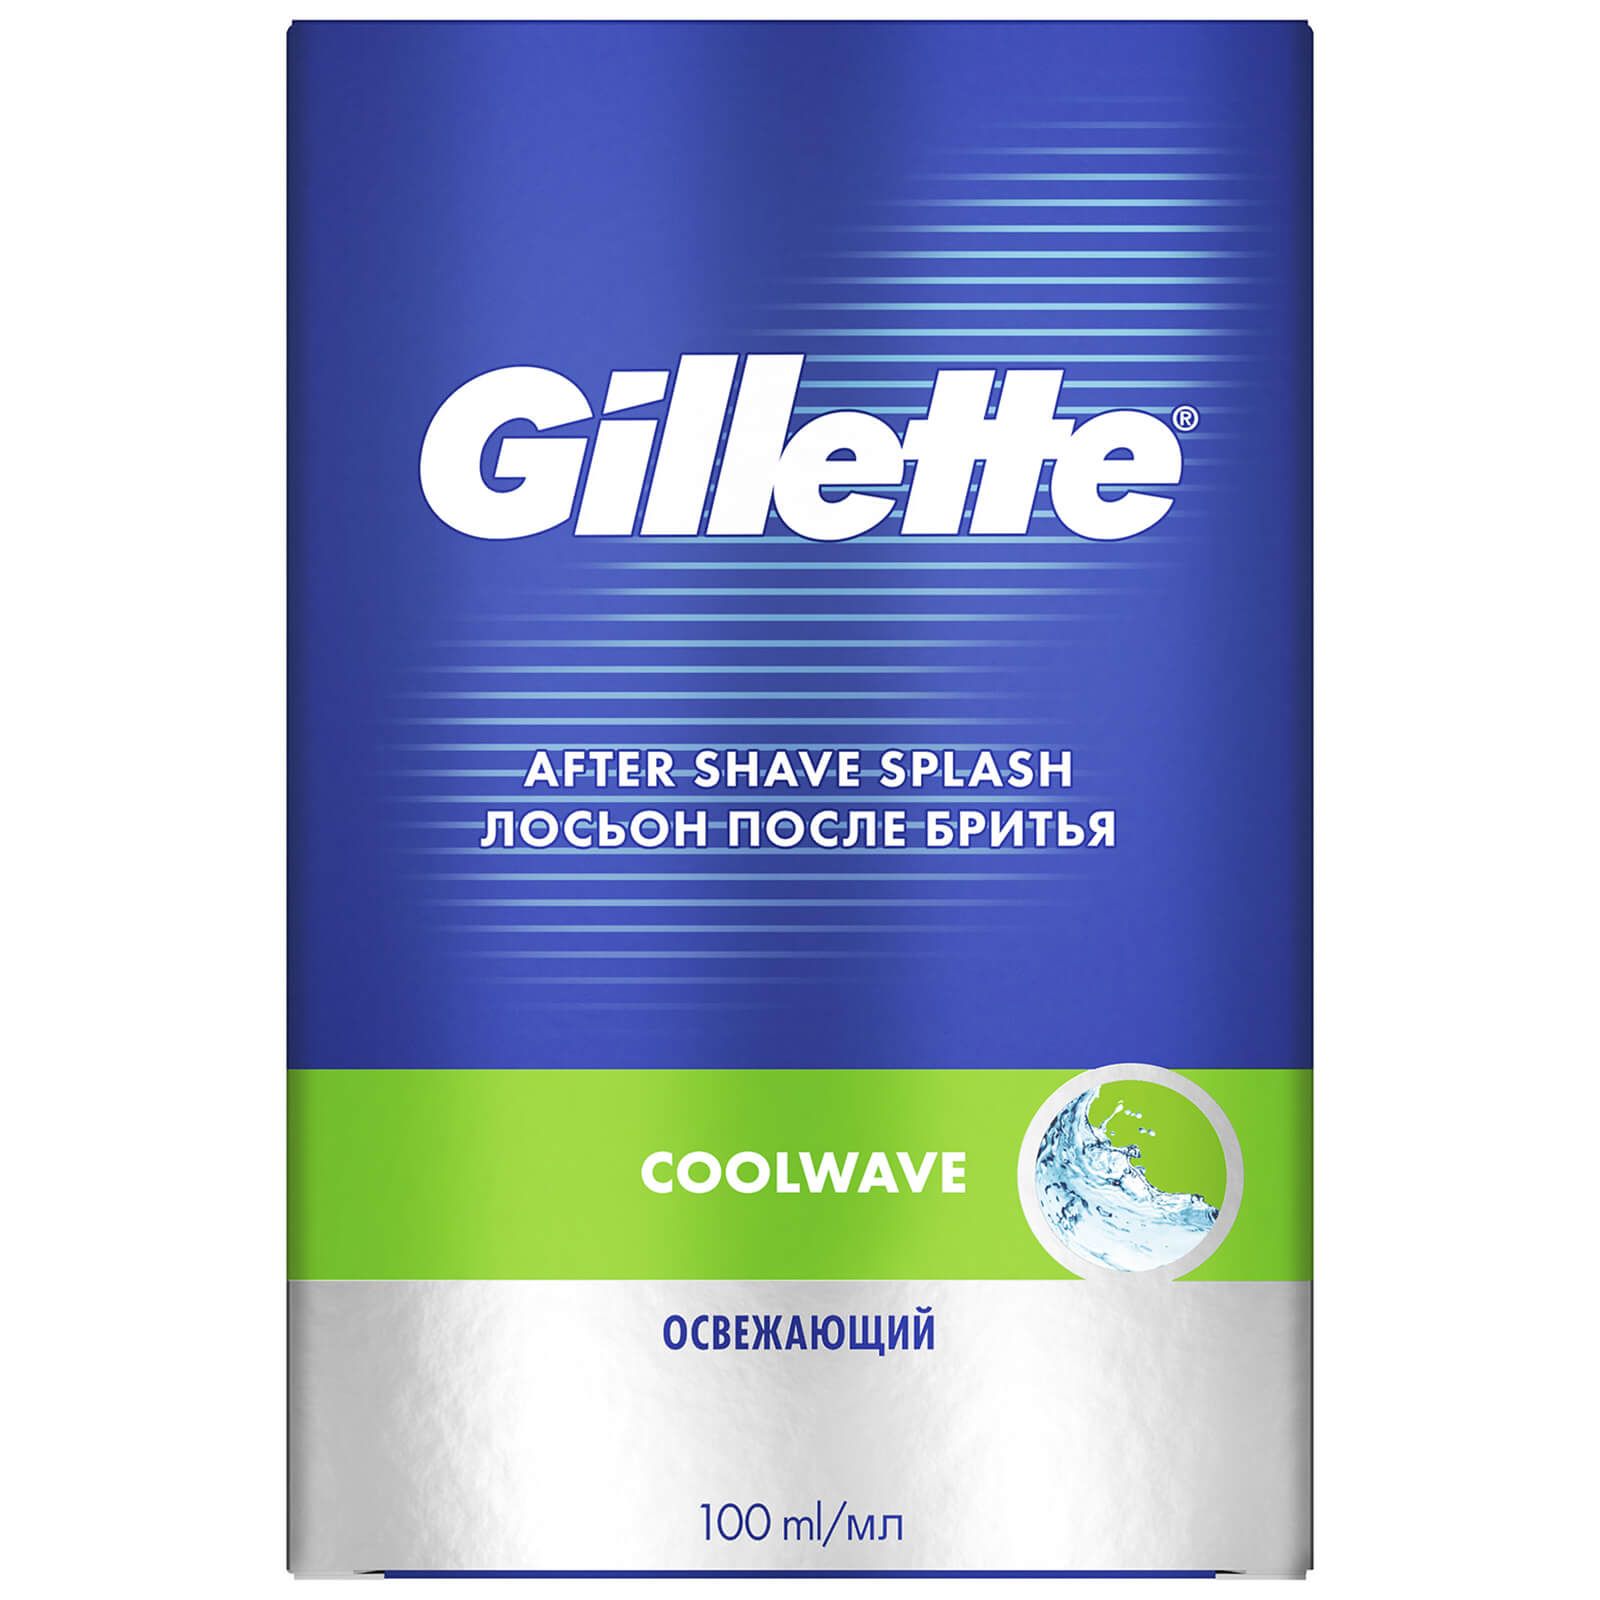 Gillette - After 'Shave Splash Cool Wave'